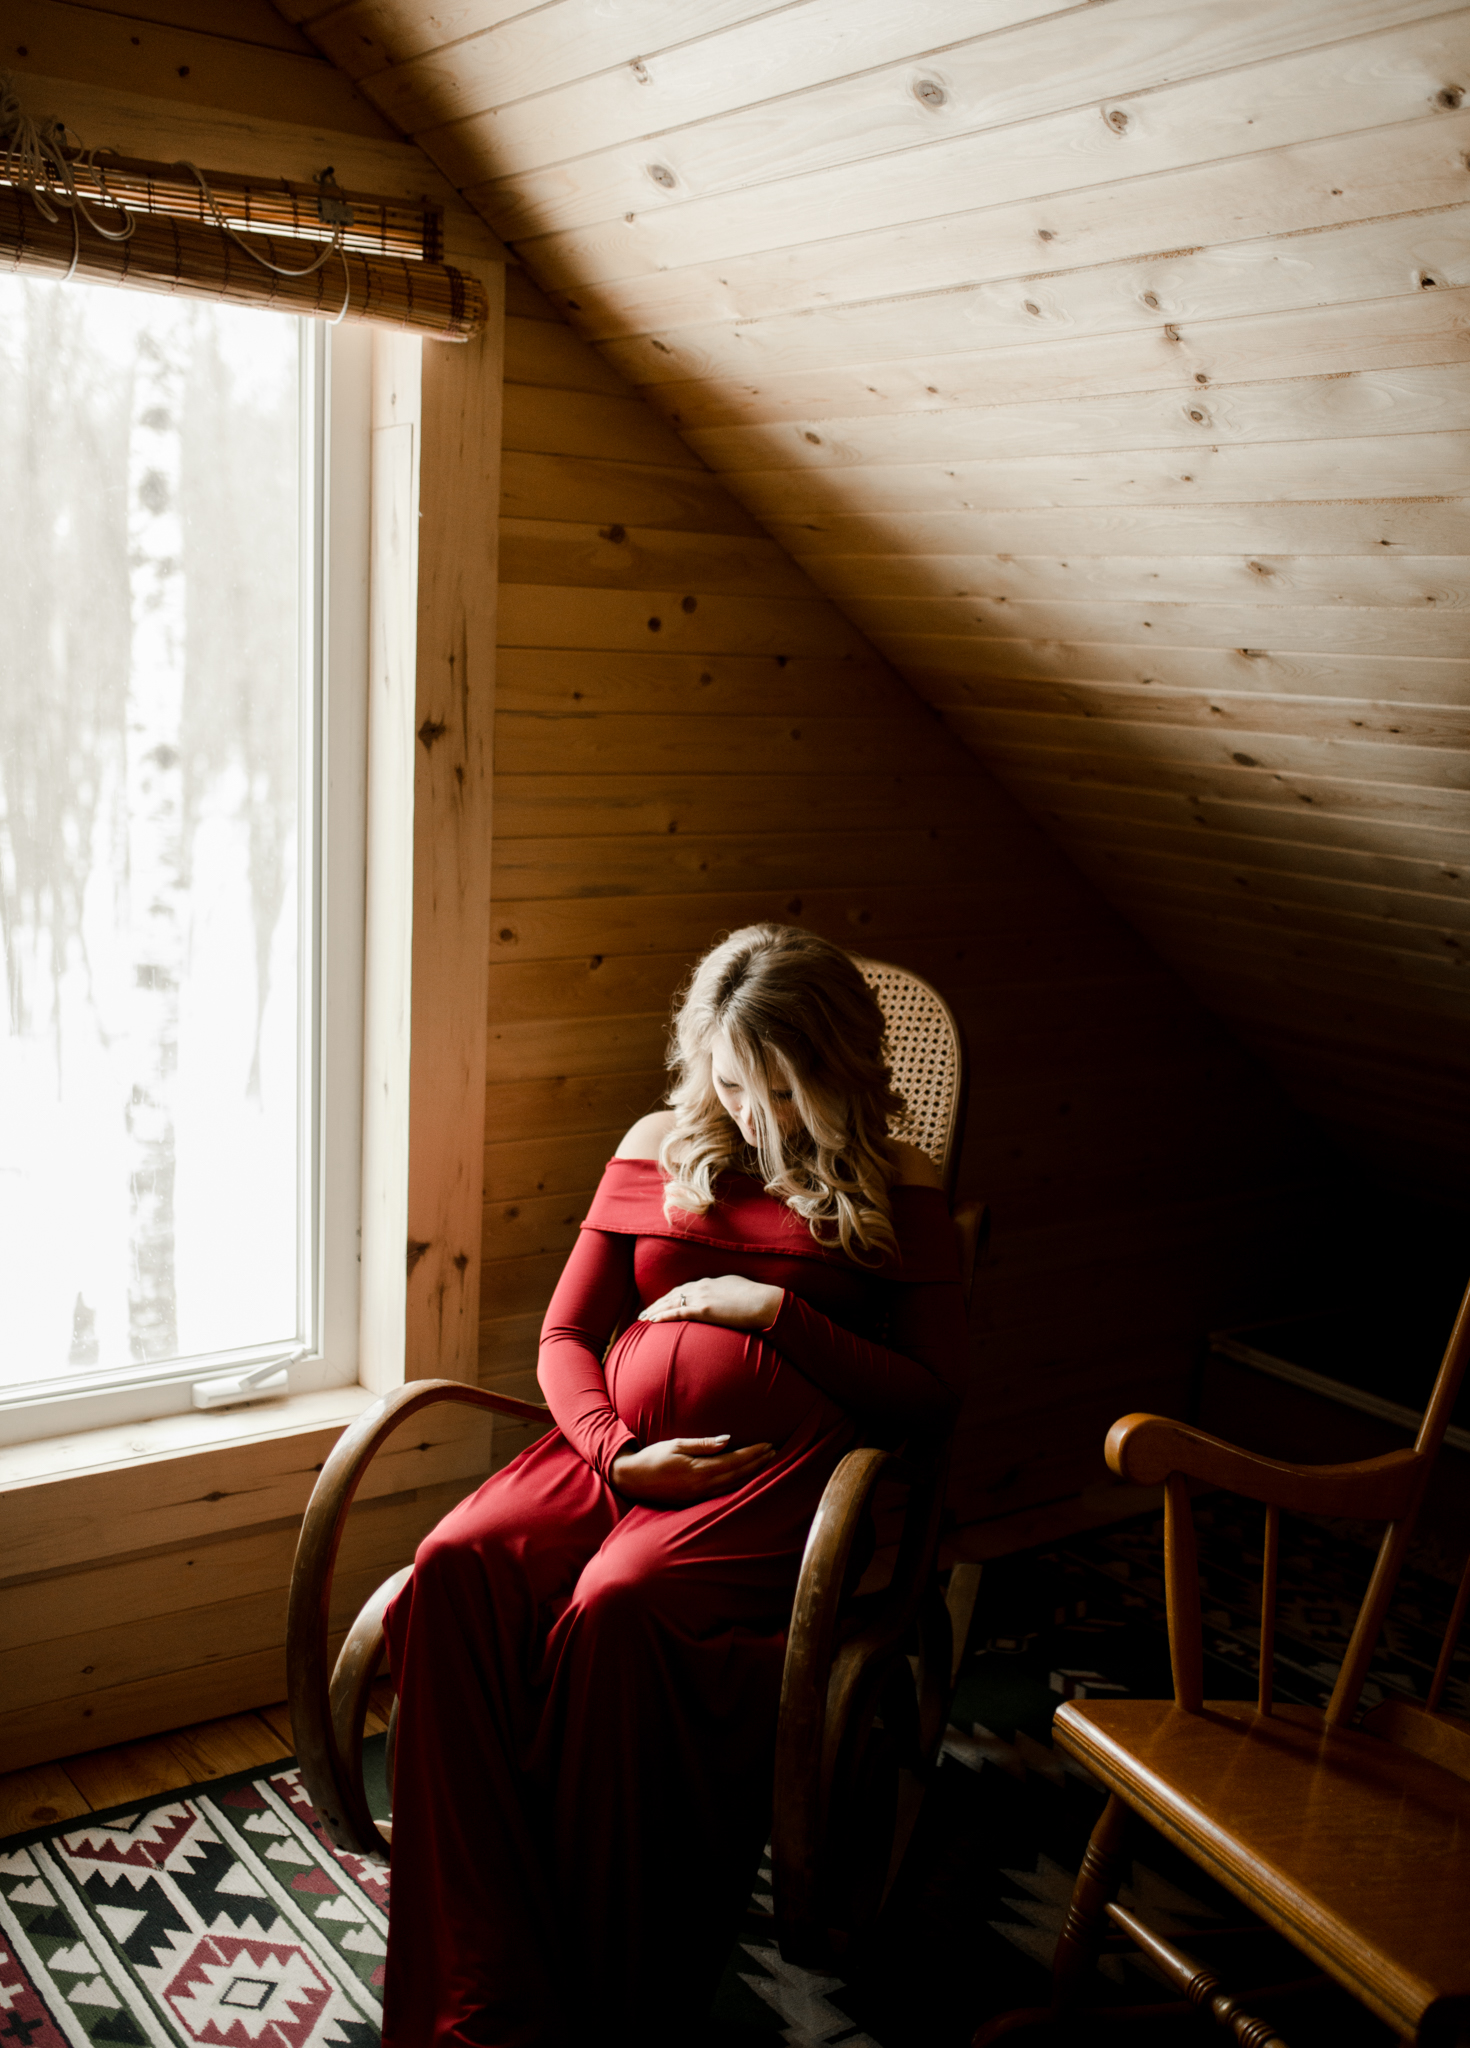 Winnipeg Wedding Photographer, winnipeg maternity photographer, winnipeg maternity shoot, red maternity dress